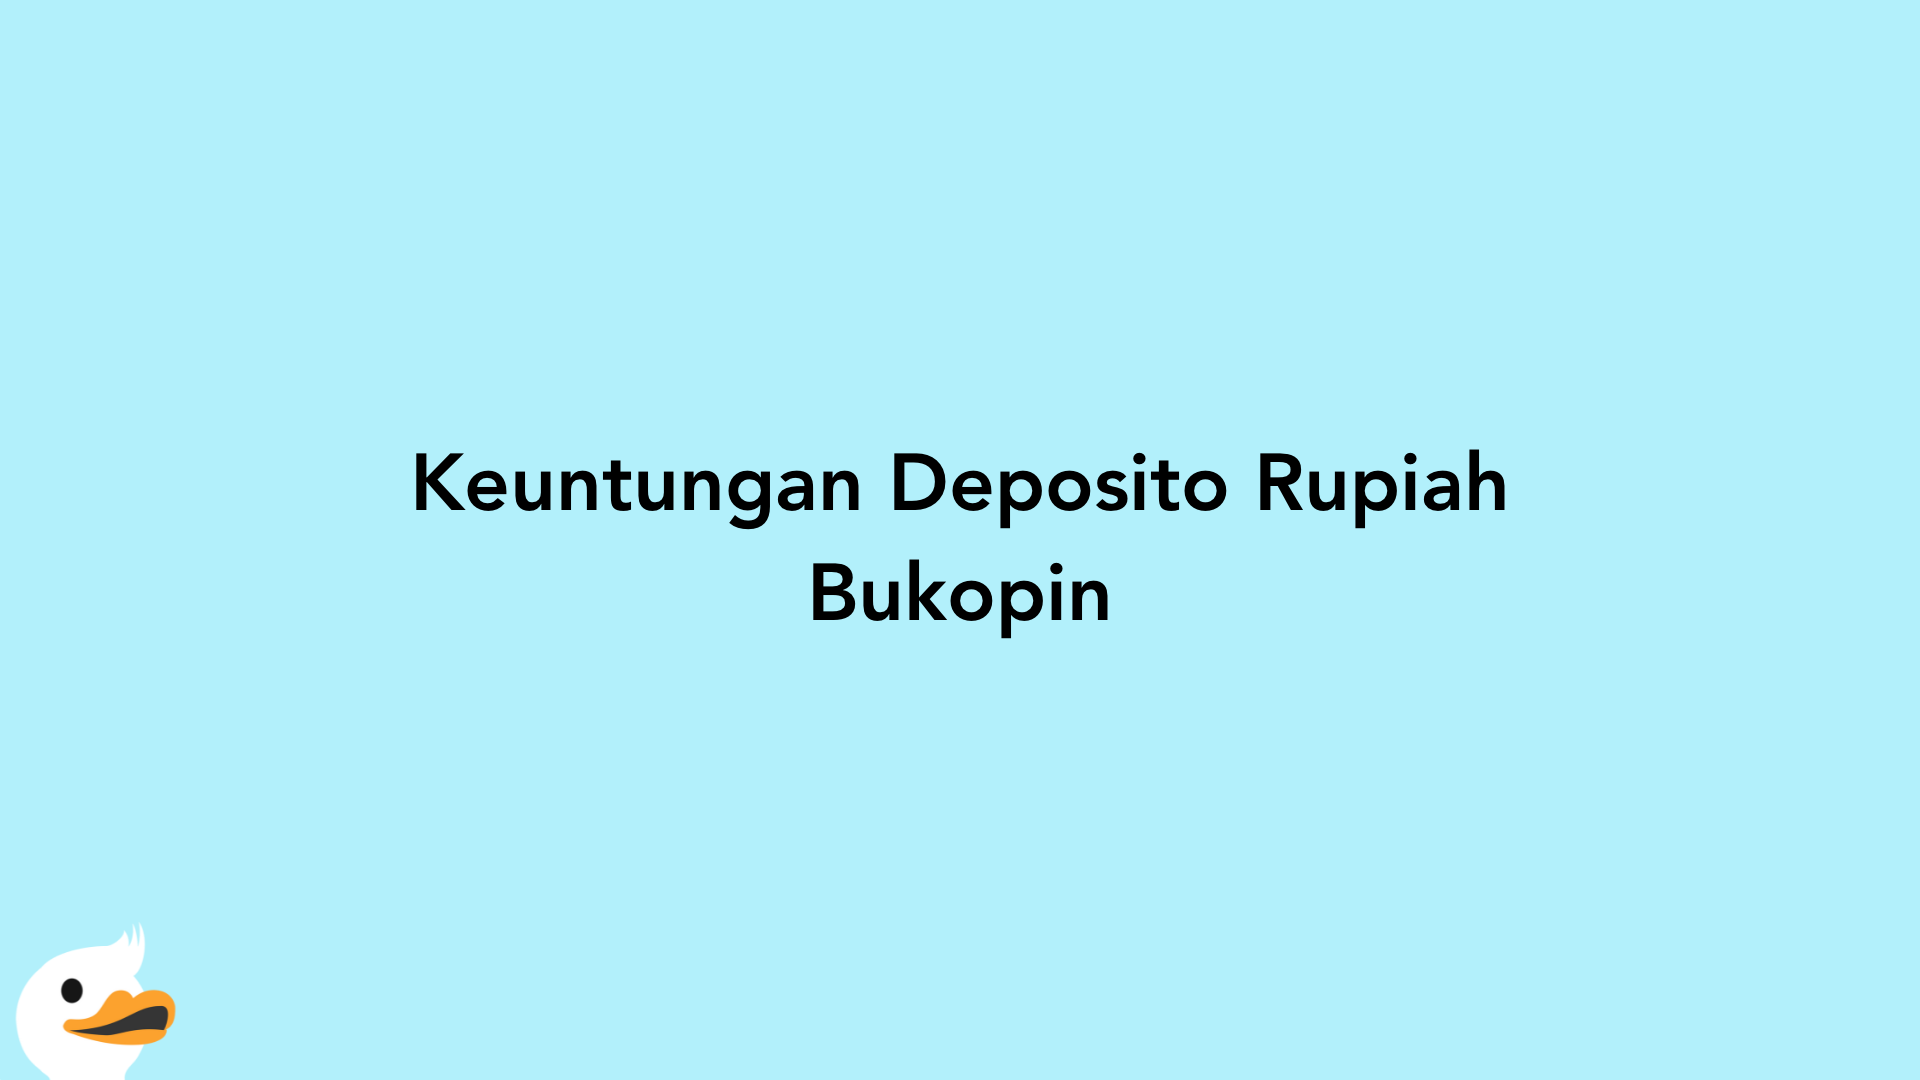 Keuntungan Deposito Rupiah Bukopin